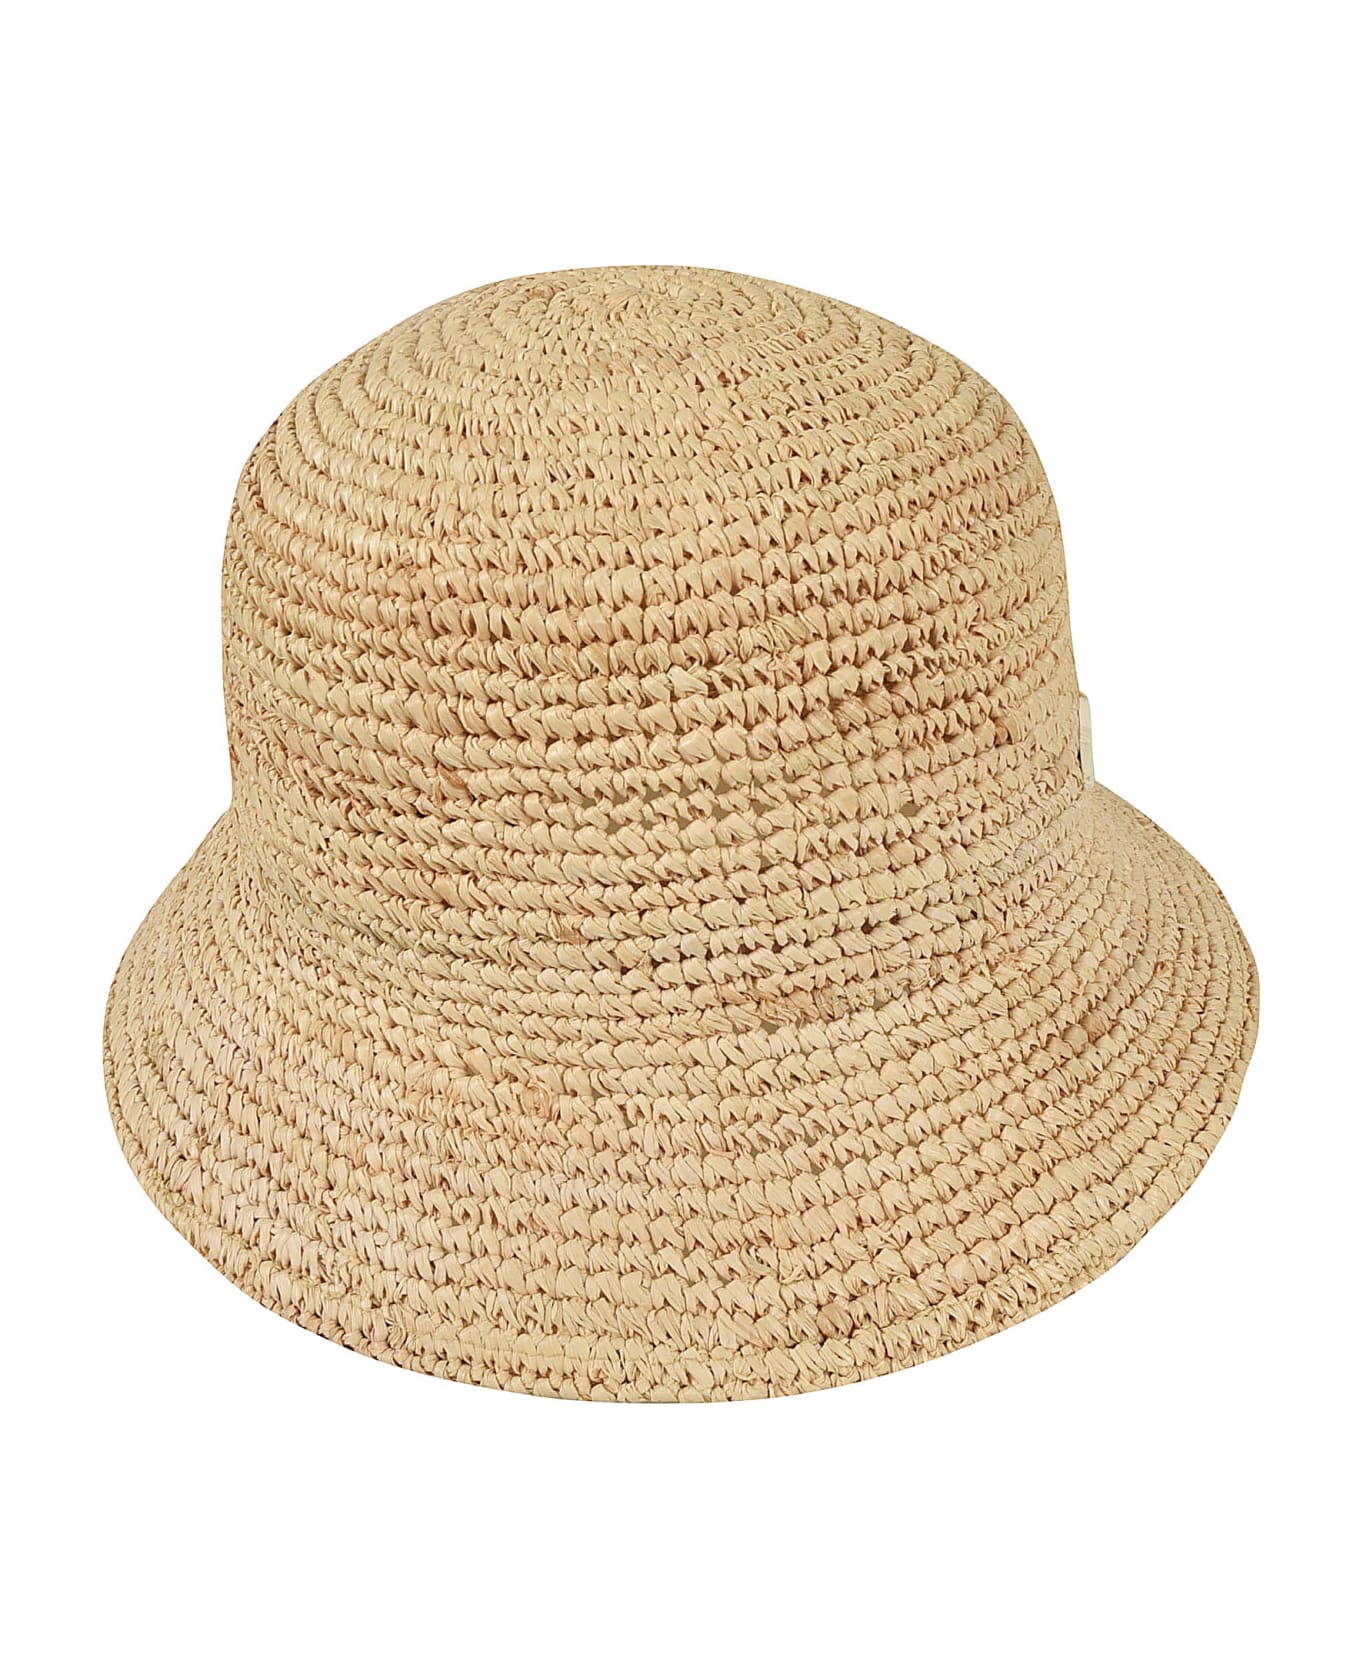 Borsalino Rafia Crochet Bucket Hat - Beige 帽子